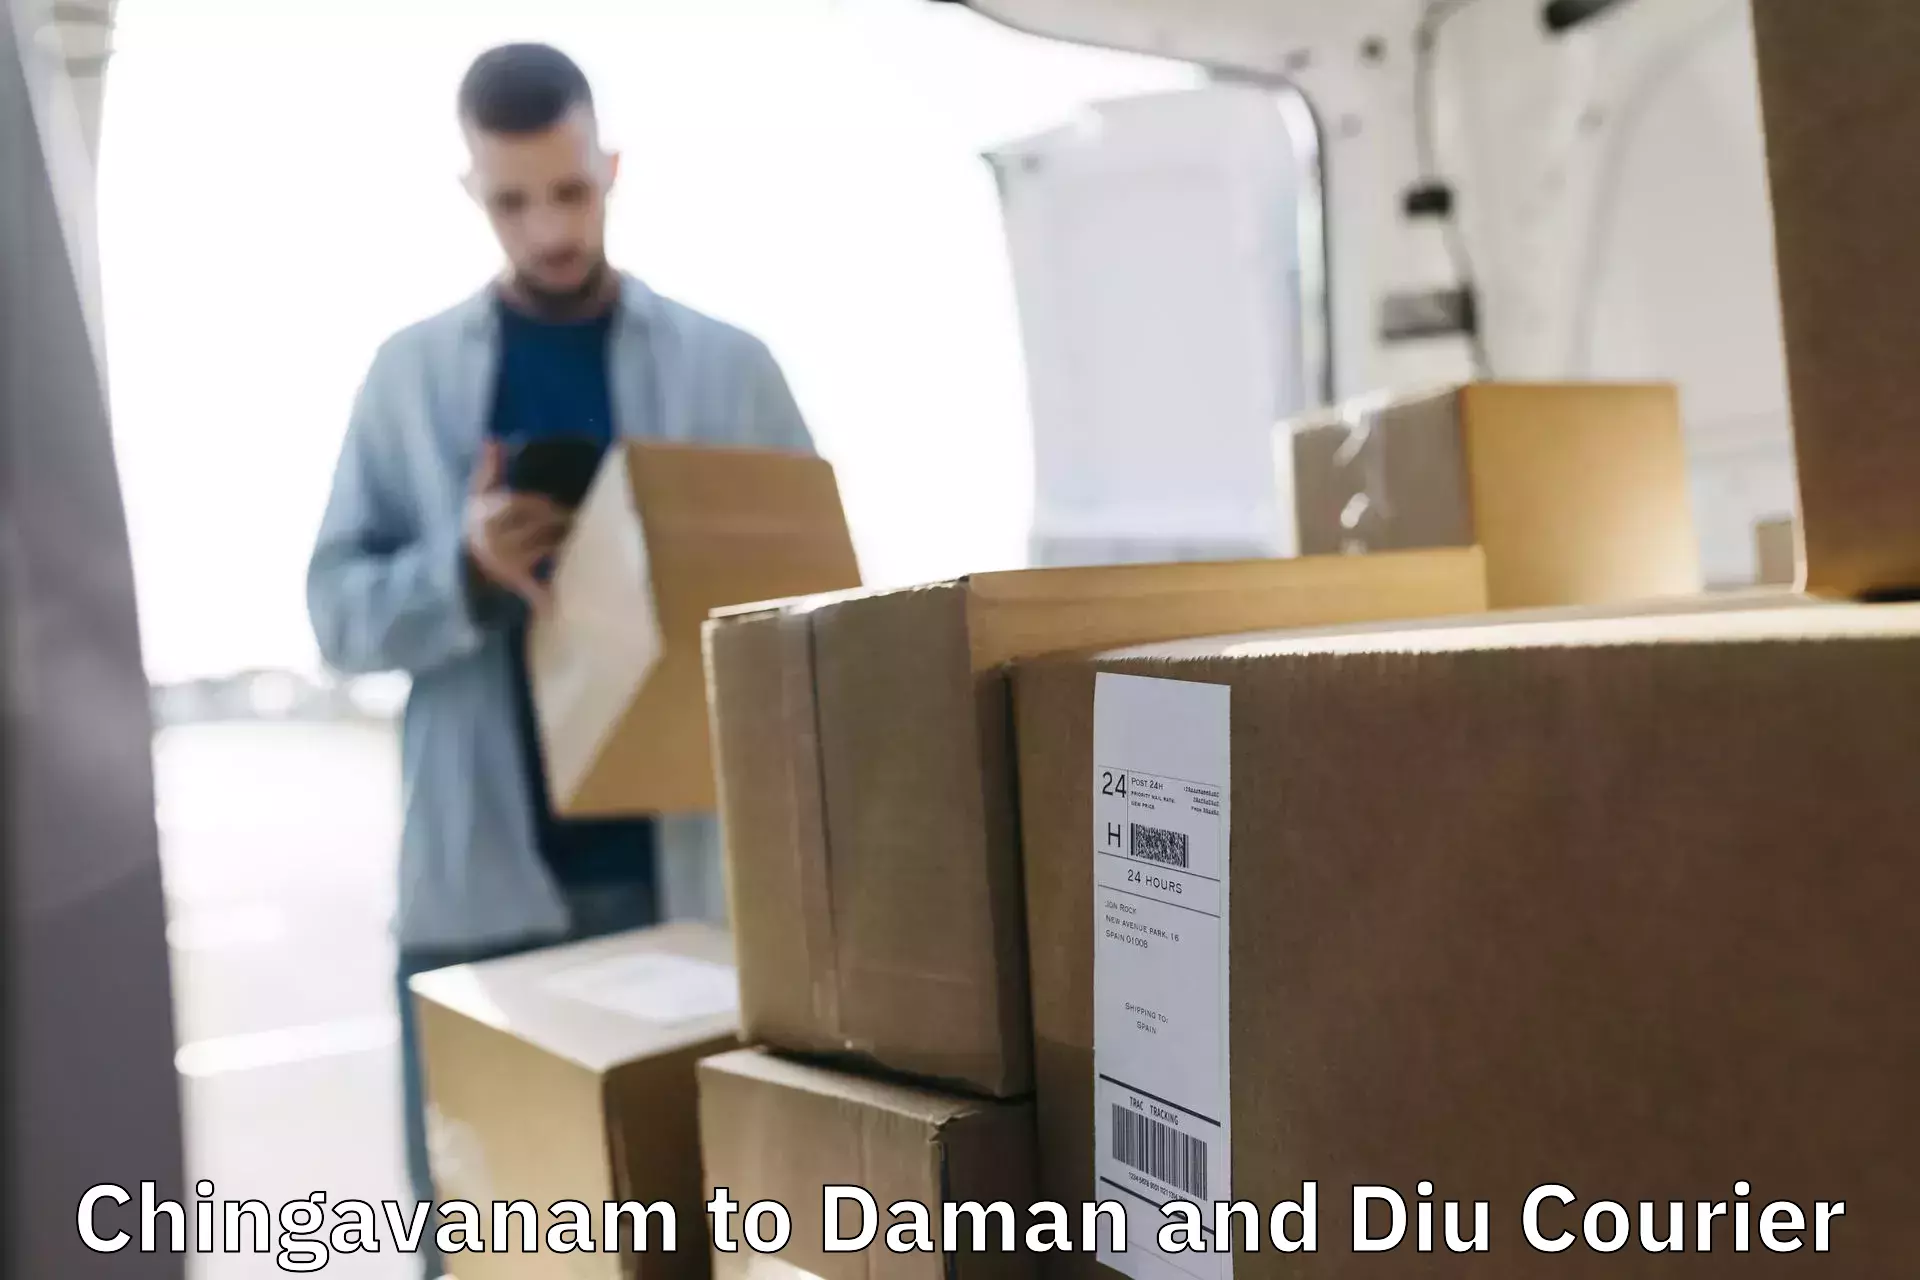 Efficient parcel service Chingavanam to Daman